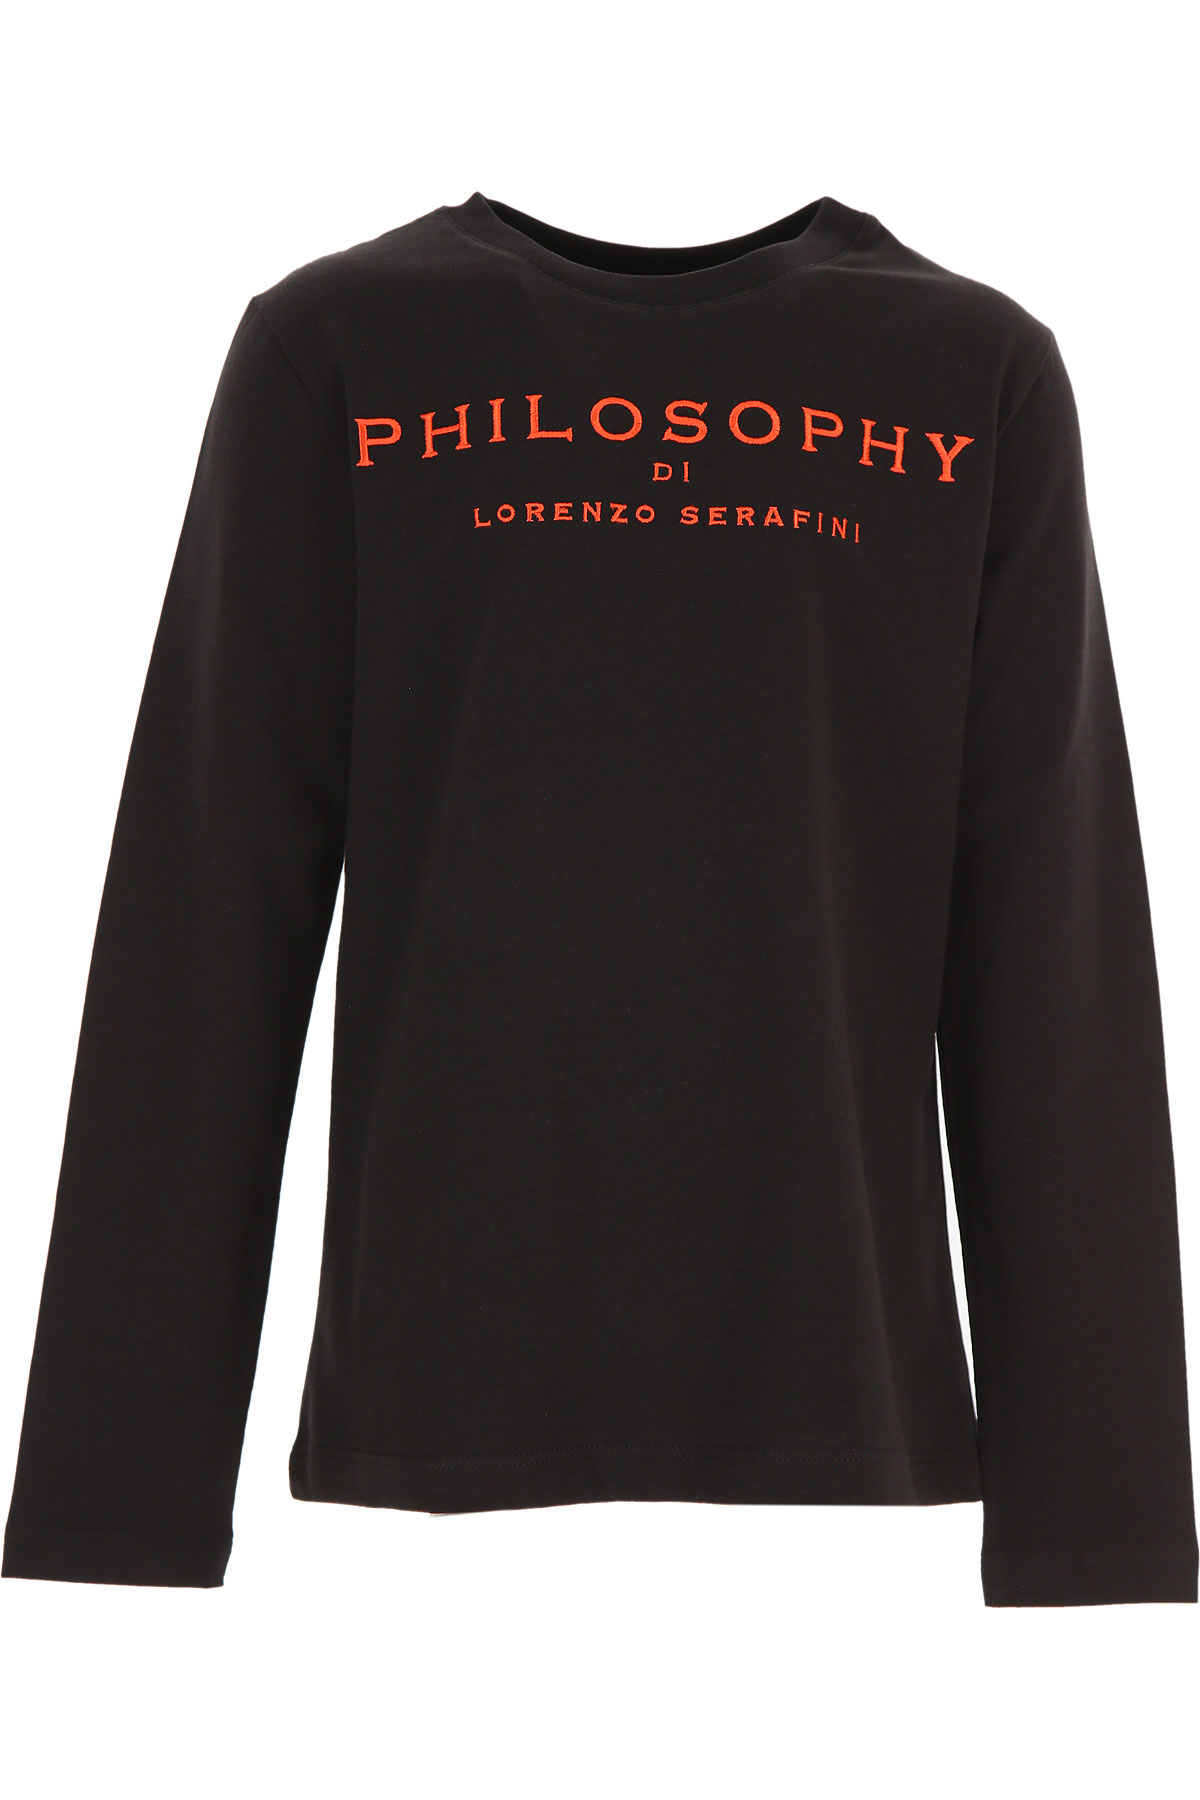 Philosophy di Lorenzo serafini Kinder T-Shirt für Mädchen Günstig im Sale, Schwarz, Baumwolle, 2017, L M S XL XS XXL